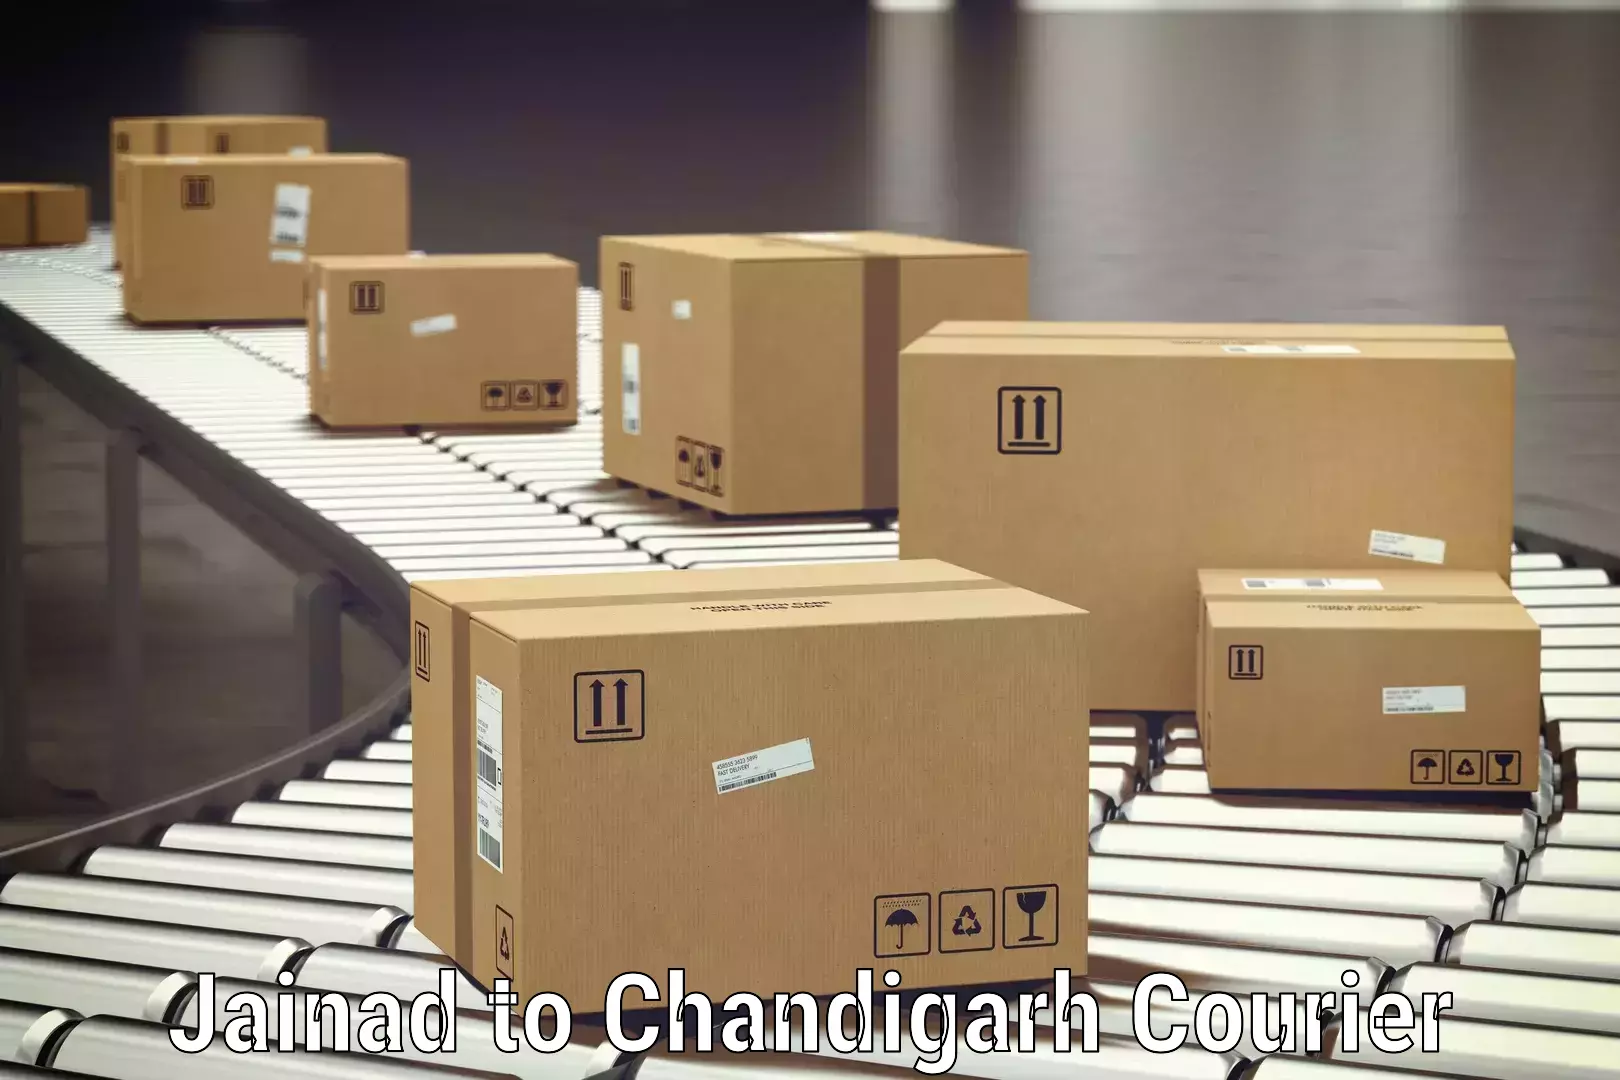 Door-to-door baggage service Jainad to Chandigarh